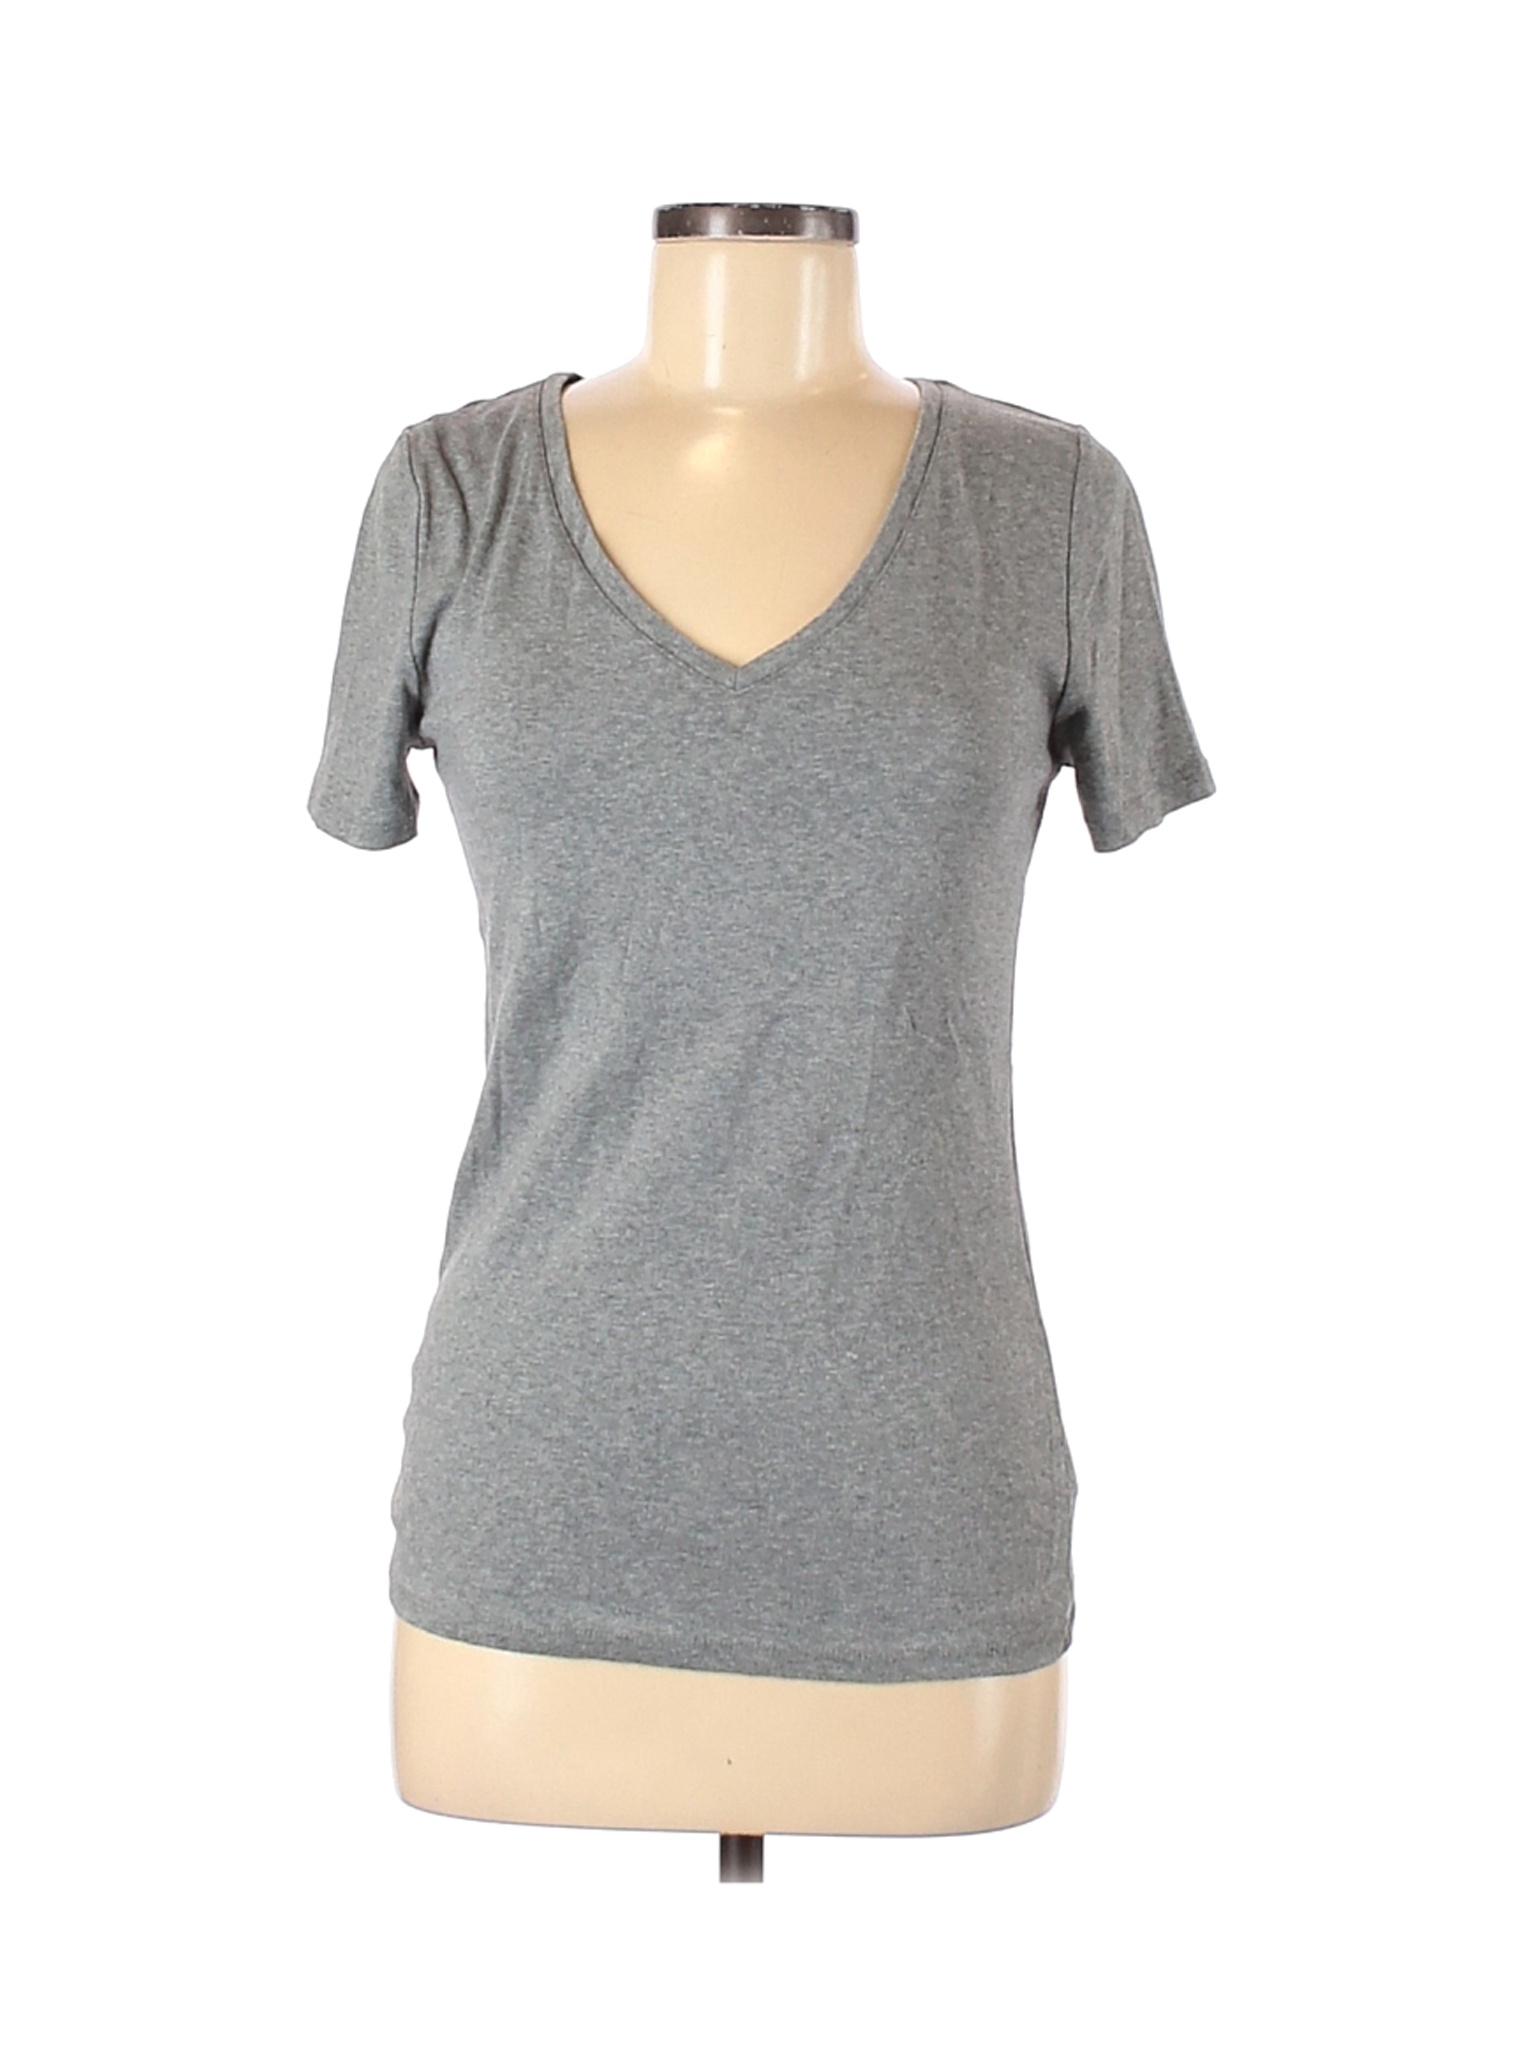 A New Day Women Gray Short Sleeve T-Shirt M | eBay